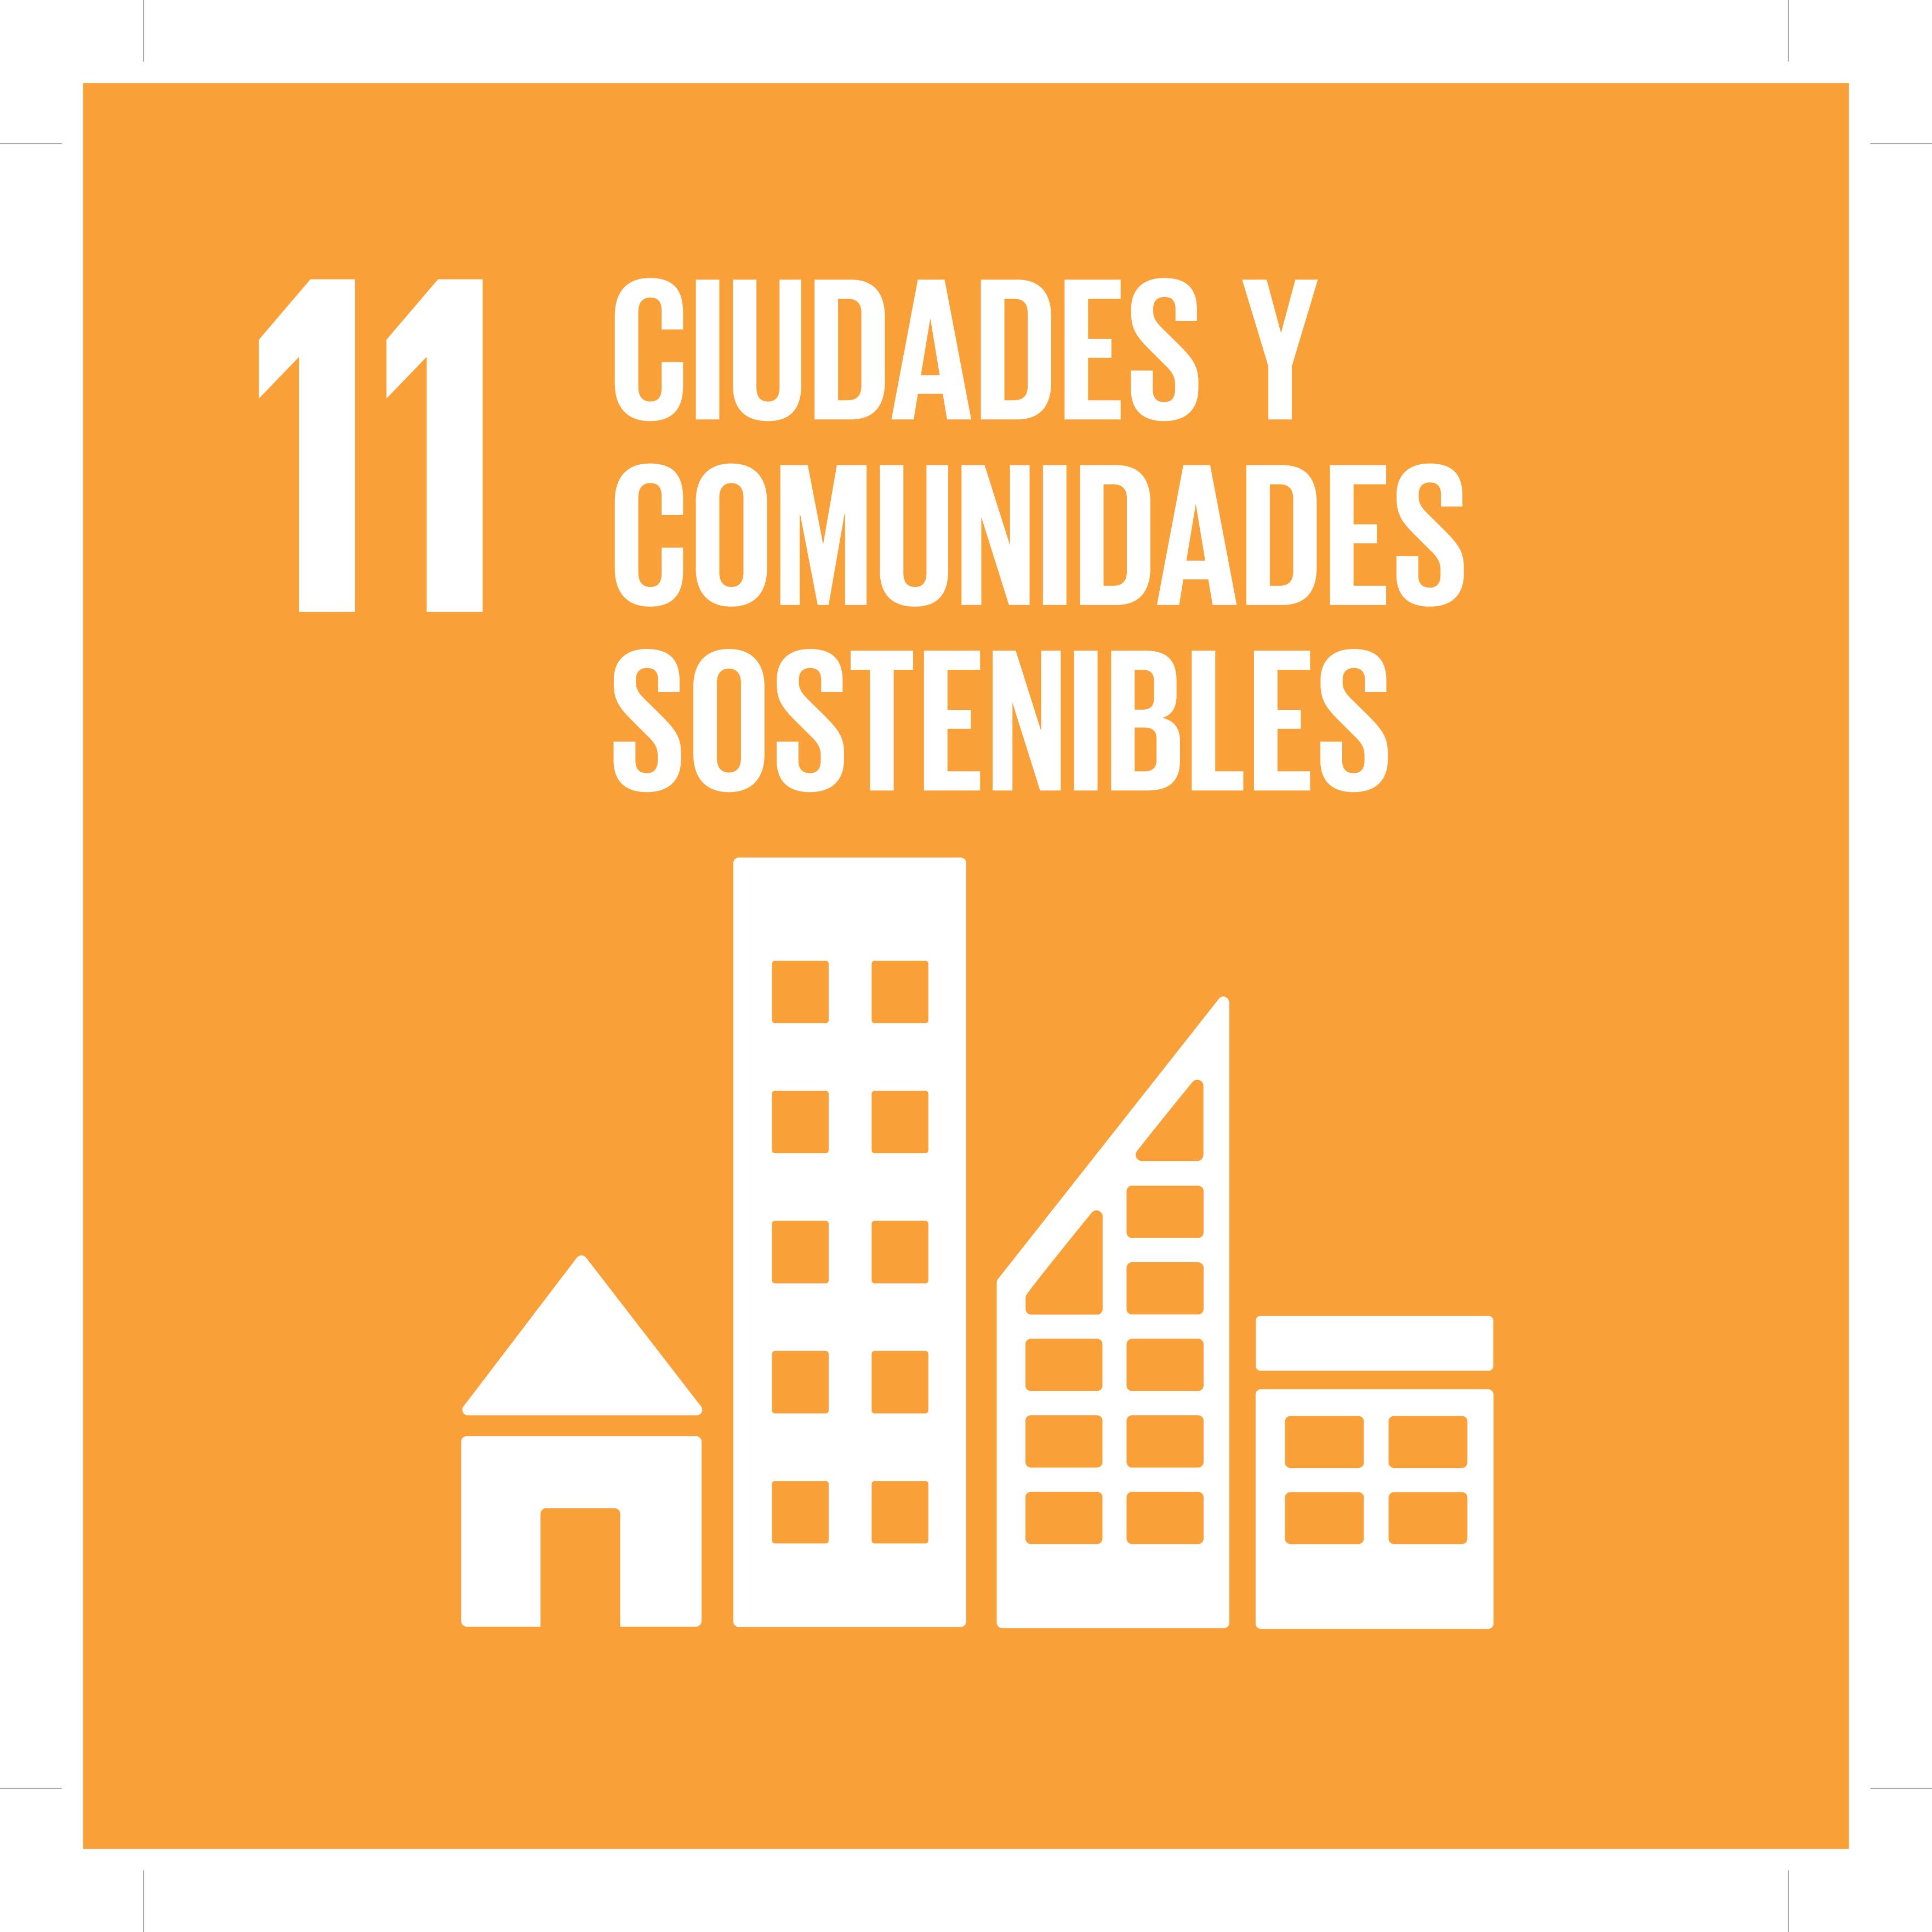 ODS11 - Ciudades y comunidades sostenibles